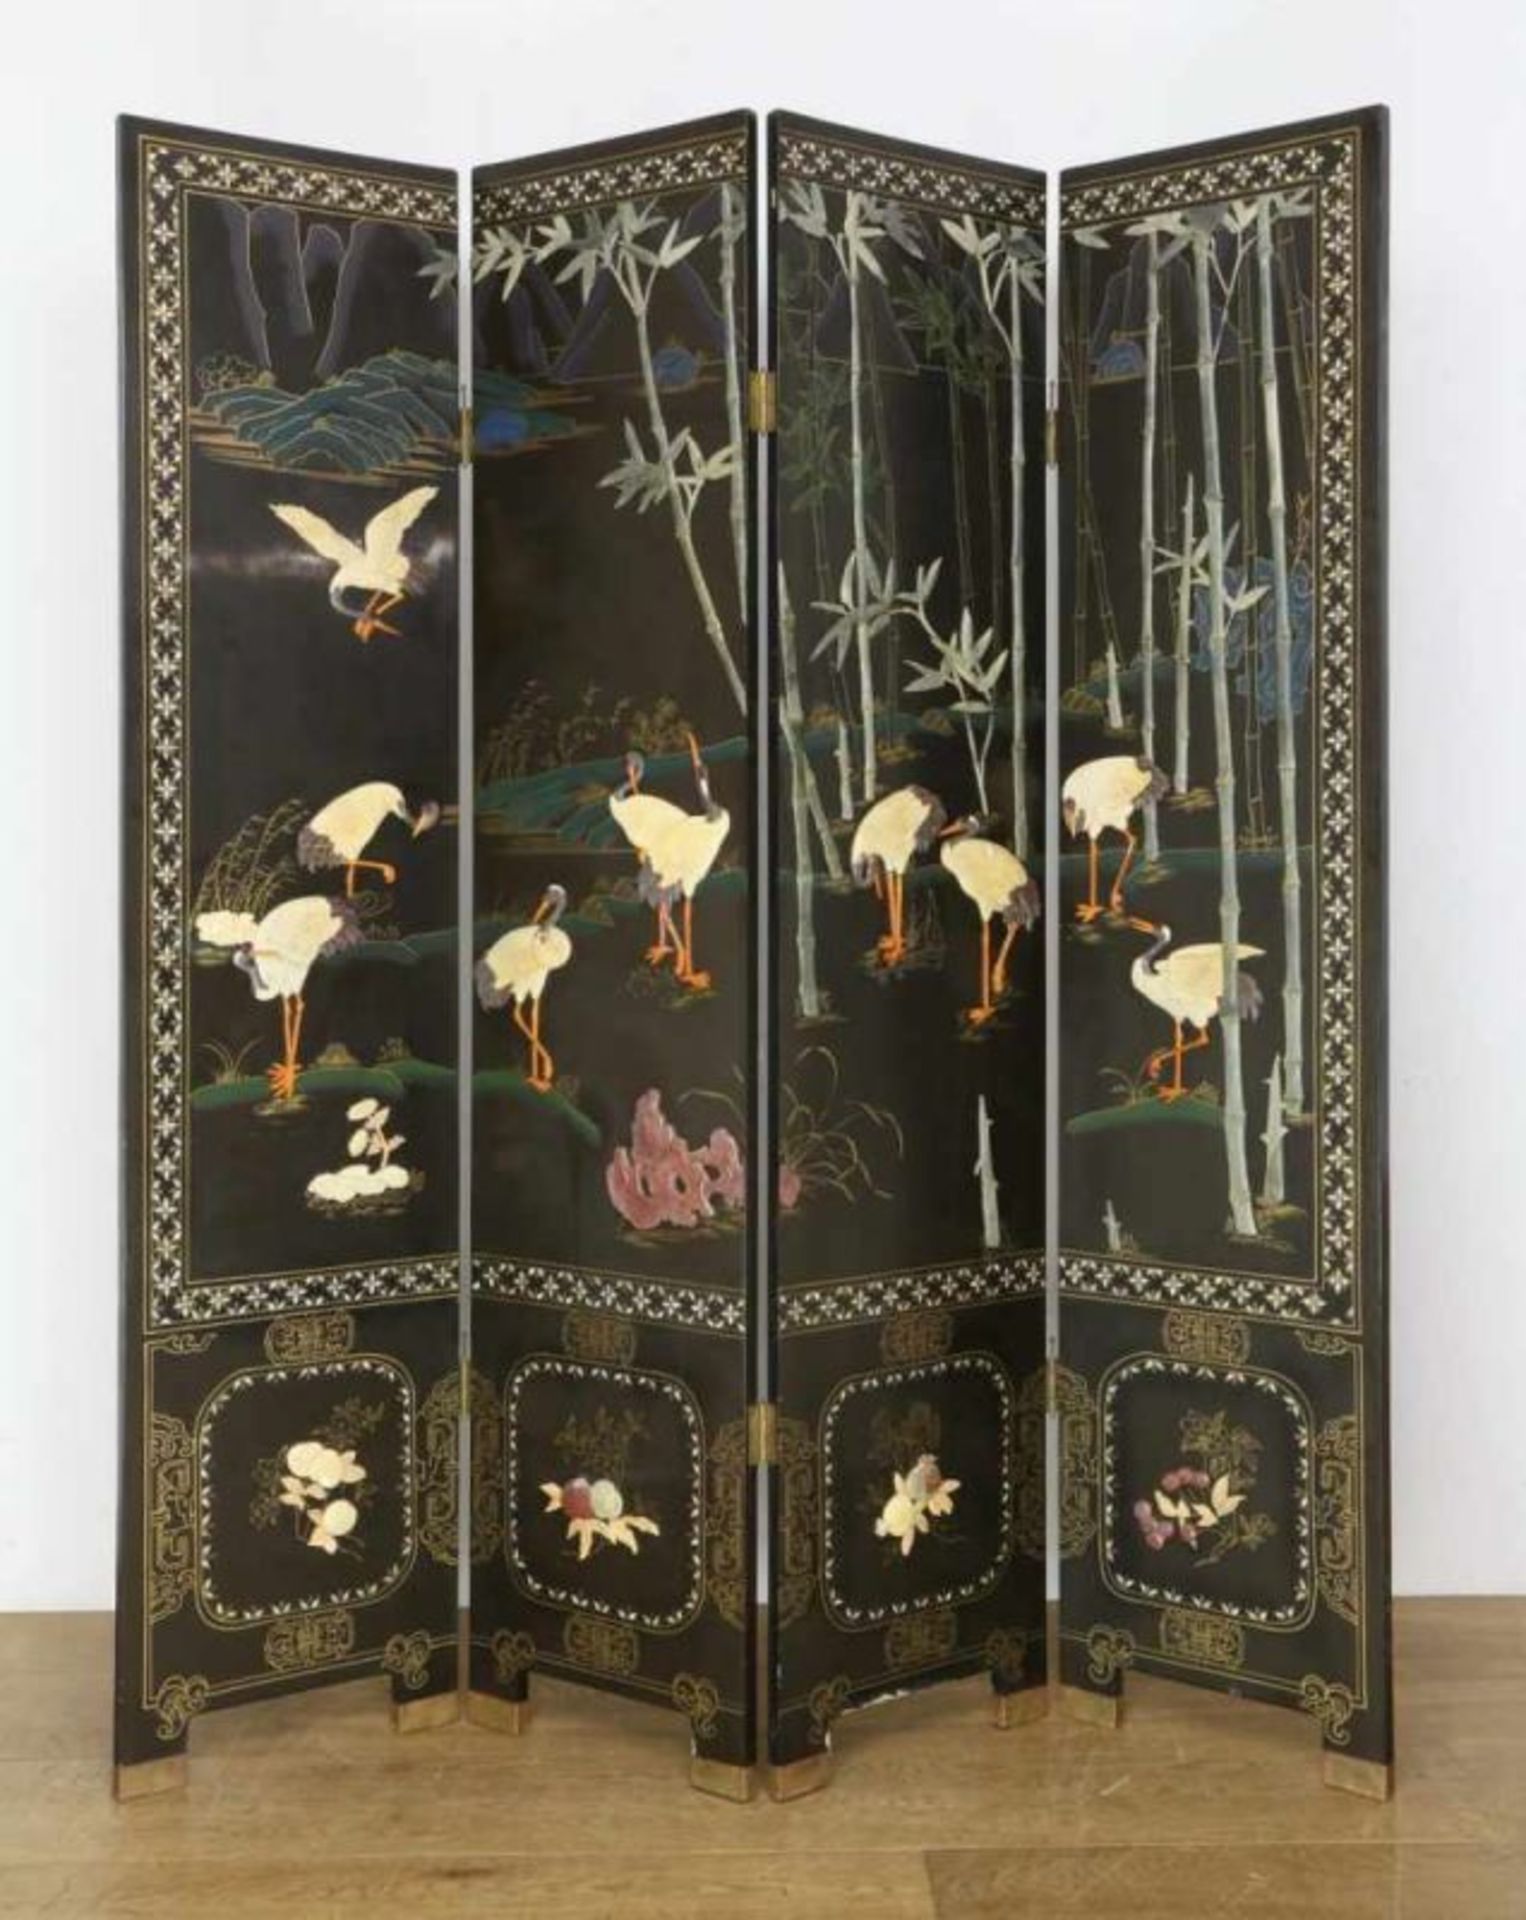 China, zwart laqué houten vierslags kamerscherm met spekstenen voorstelling van vogels en bamboe.